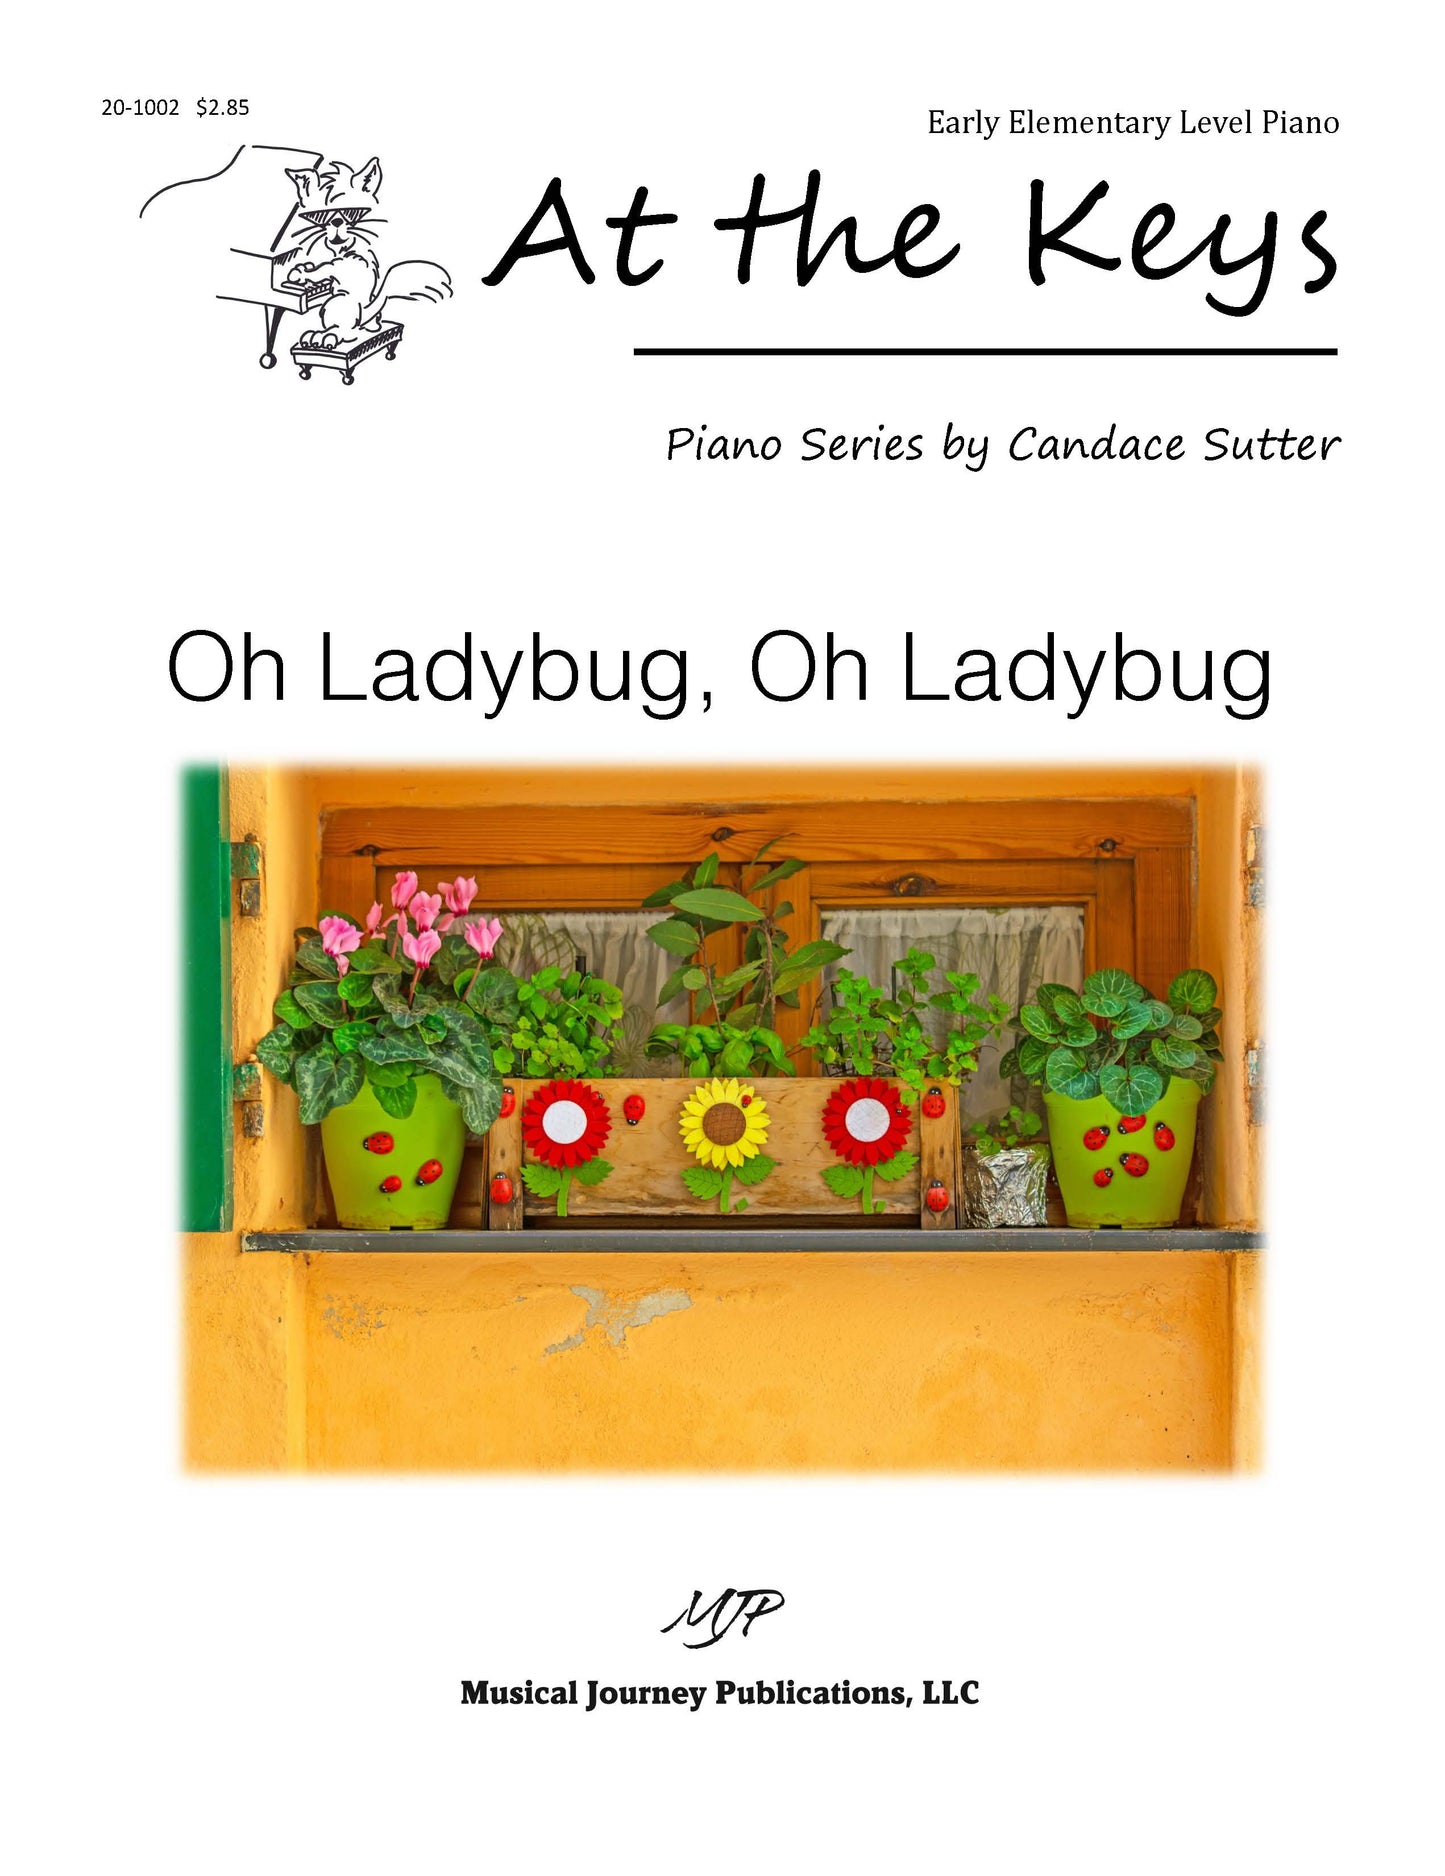 Oh Ladybug, Oh Ladybug